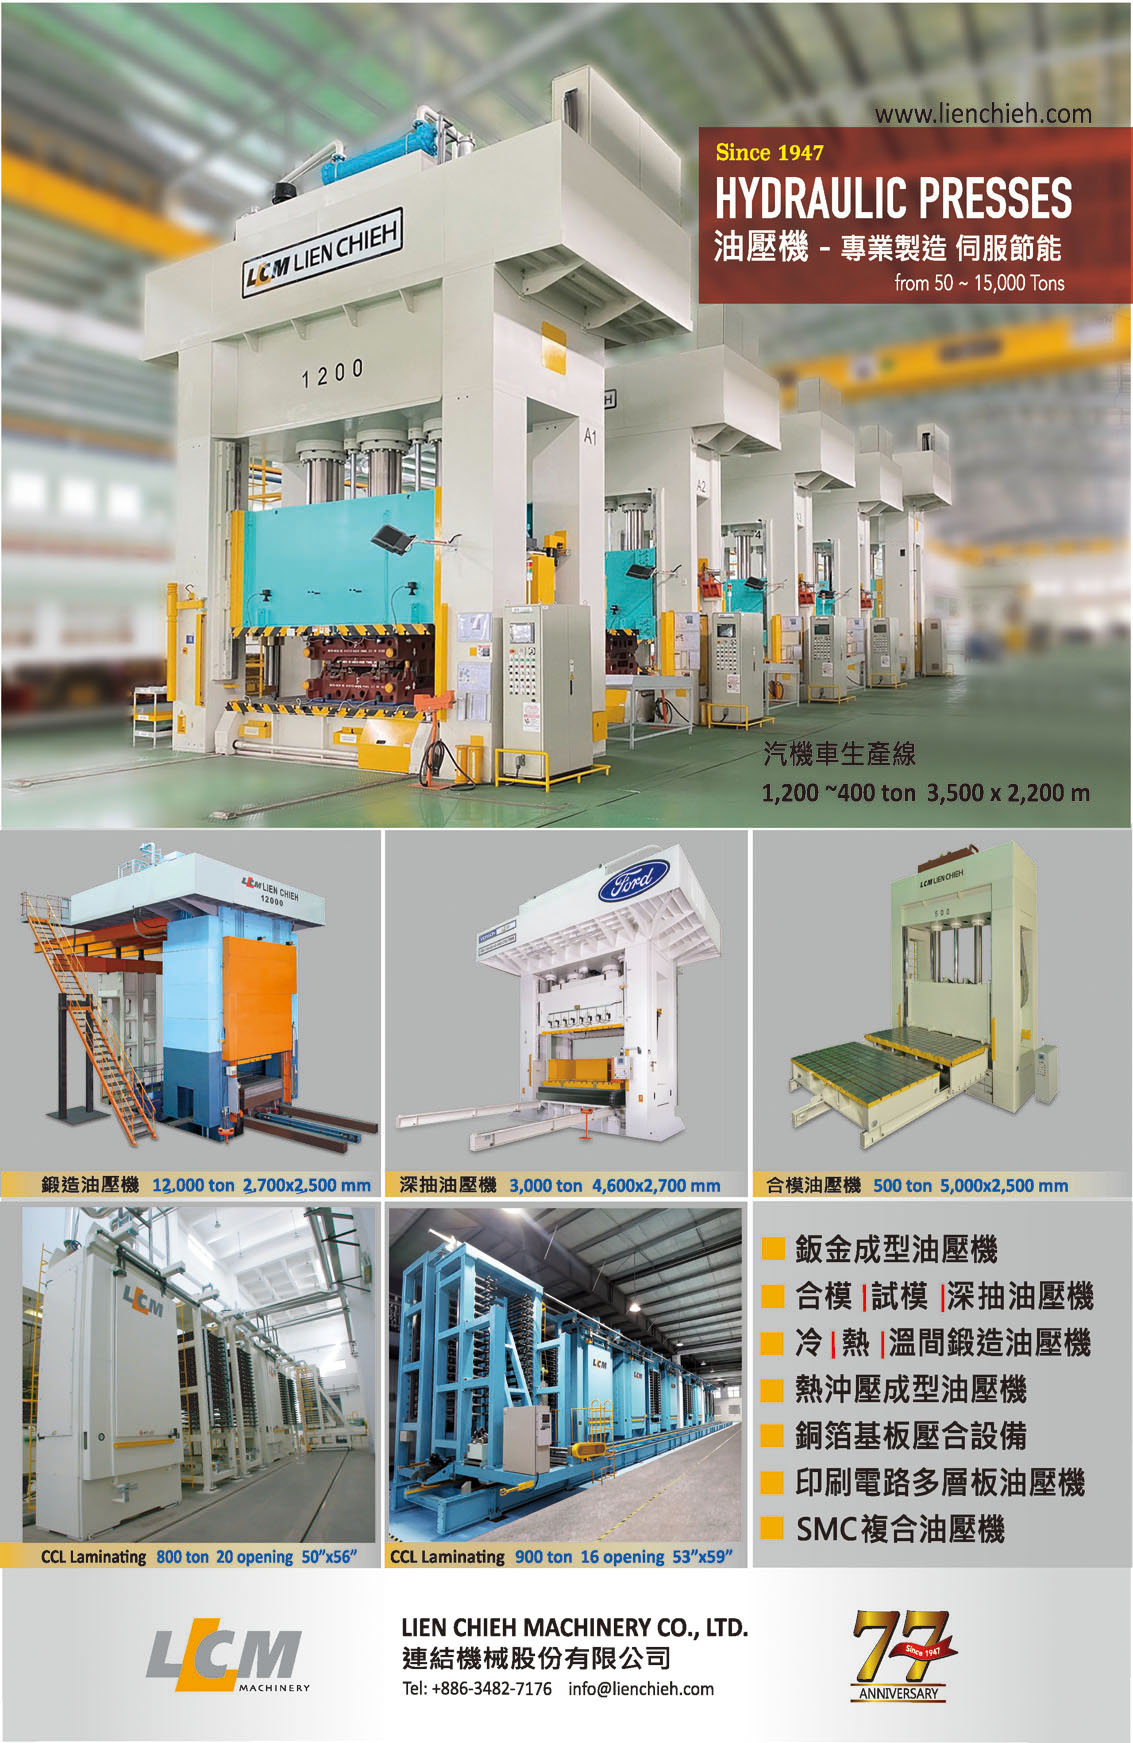 台湾机械制造厂商名录中文版 连结机械股份有限公司